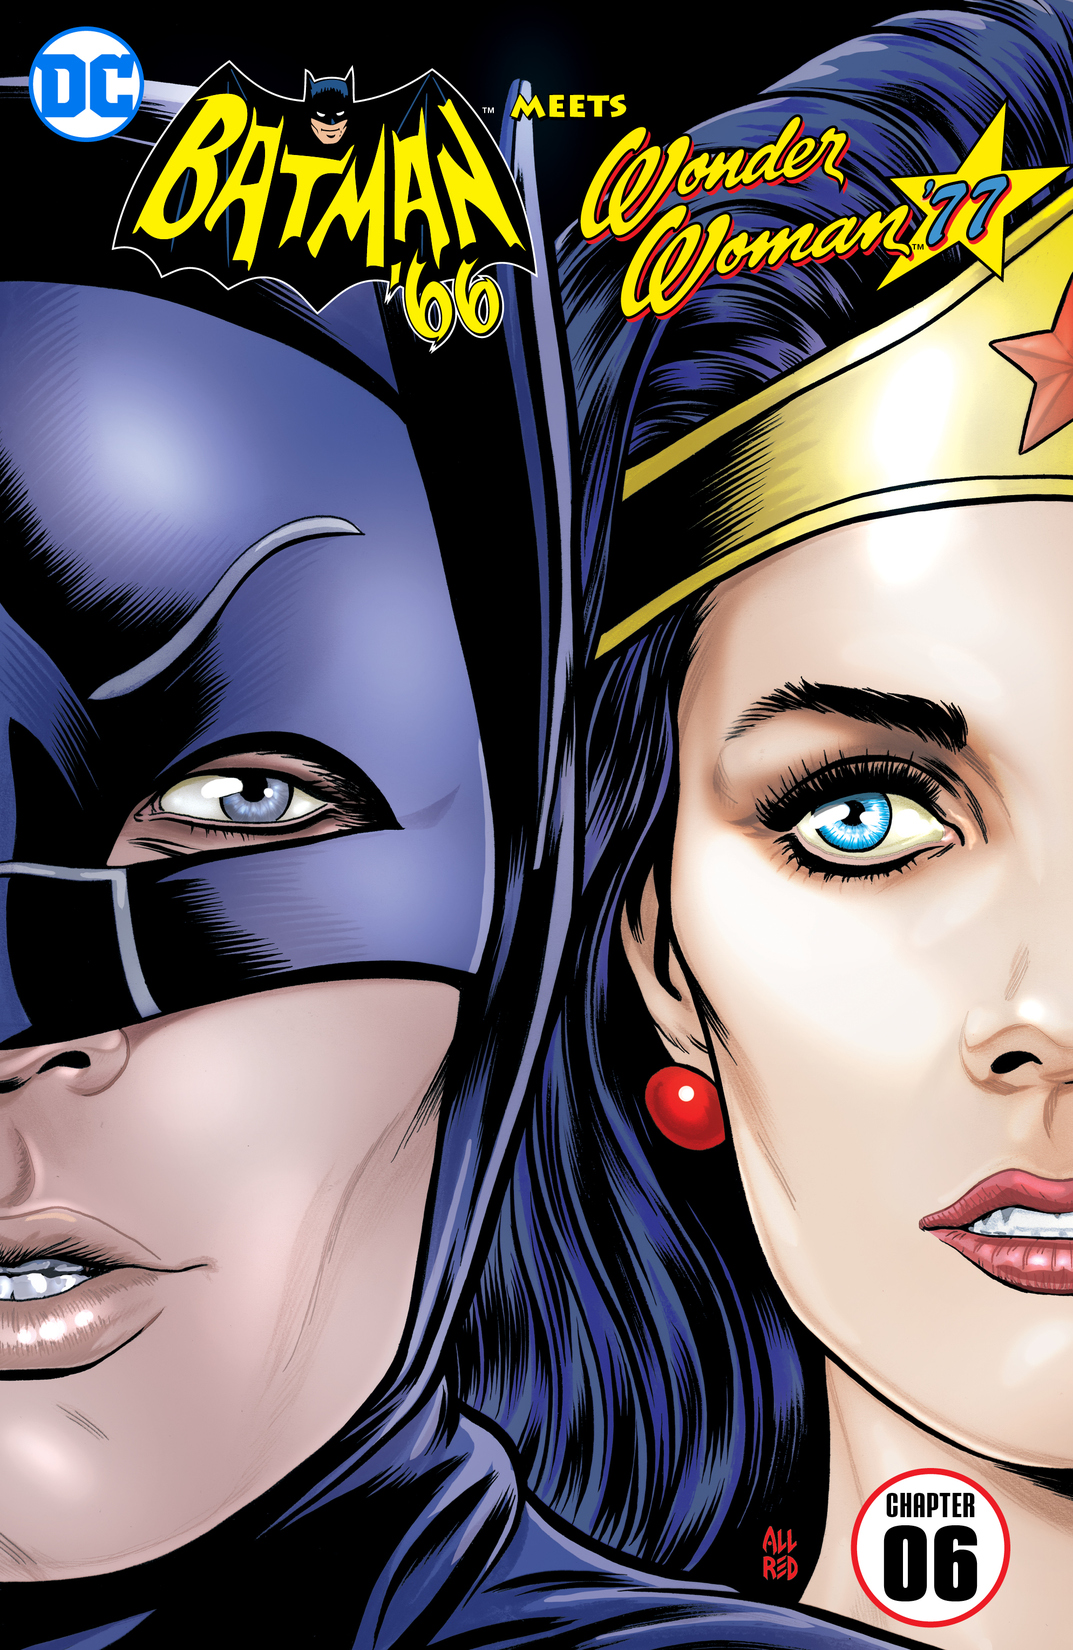 Batman '66 Meets Wonder Woman '77 #6 preview images